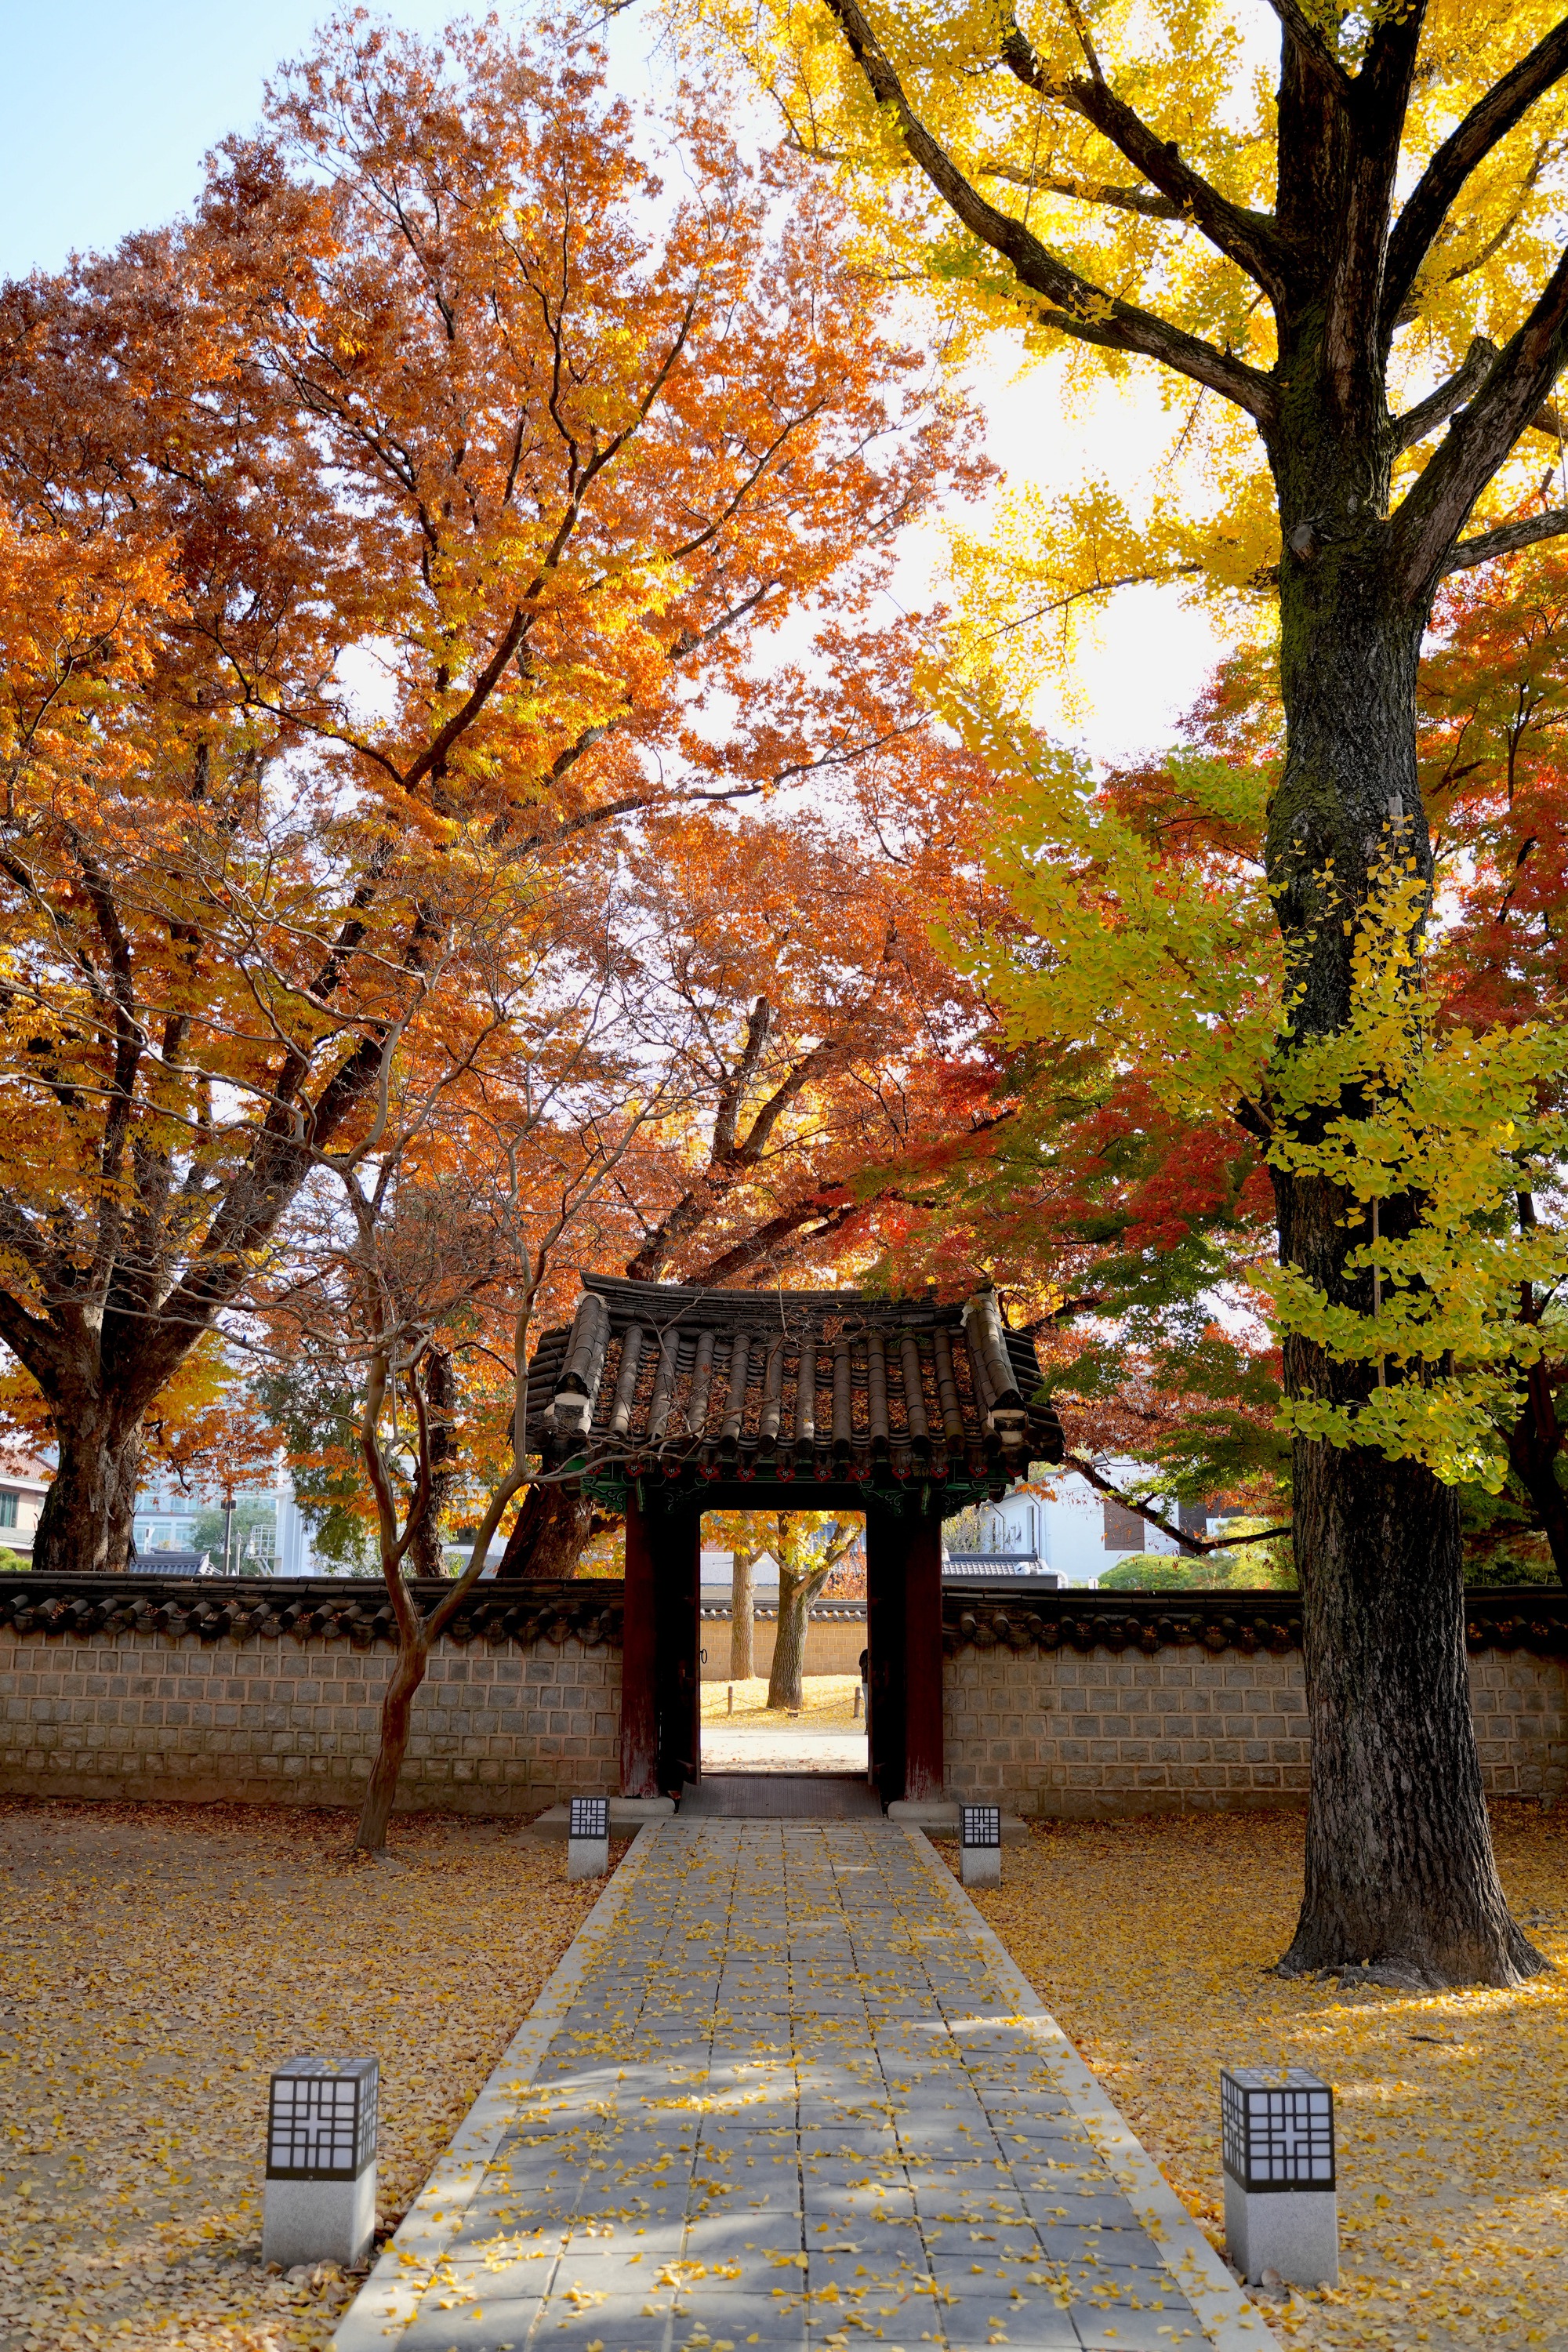 Mùa thu đẹp nao lòng ở làng cổ trăm năm tuổi của Hàn Quốc - Ảnh 7.